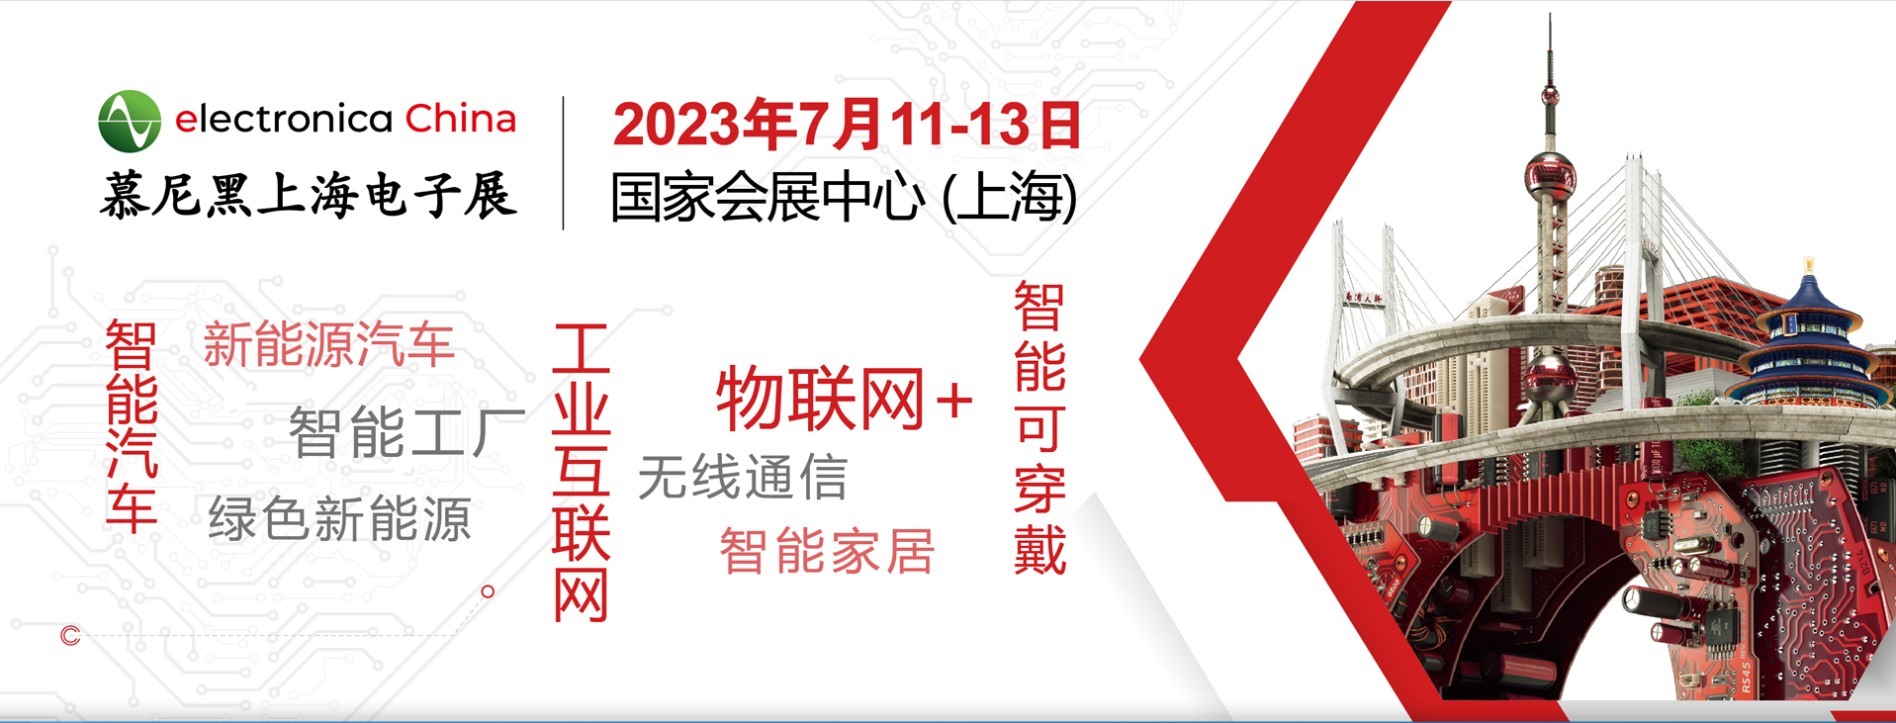 2023慕尼黑上海电子展